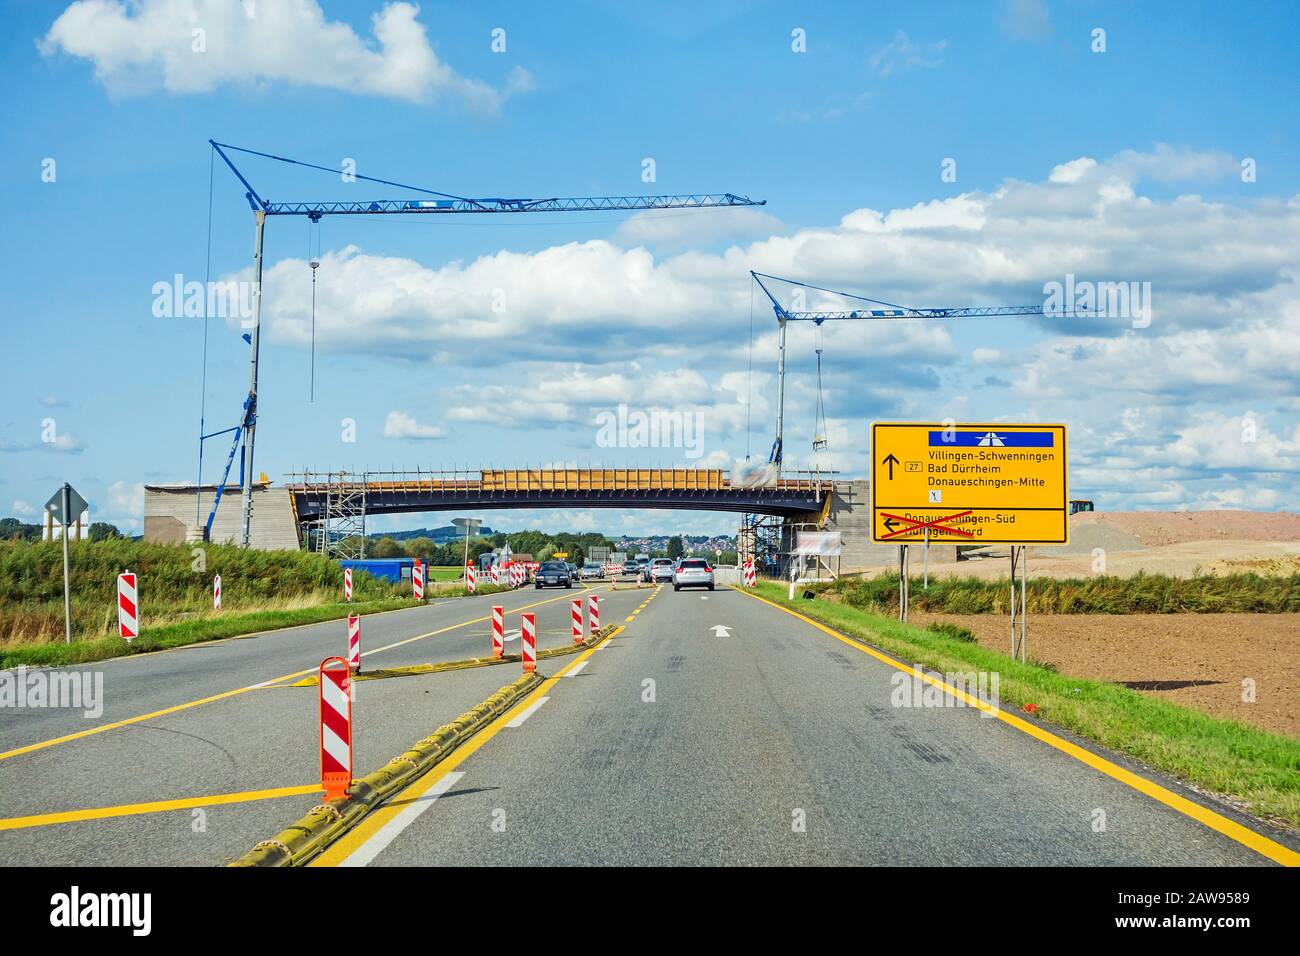 bridge reconstruction over federal highway B27 direction Villingen-Schwenningen. Road with cars and cranes. Stock Photo